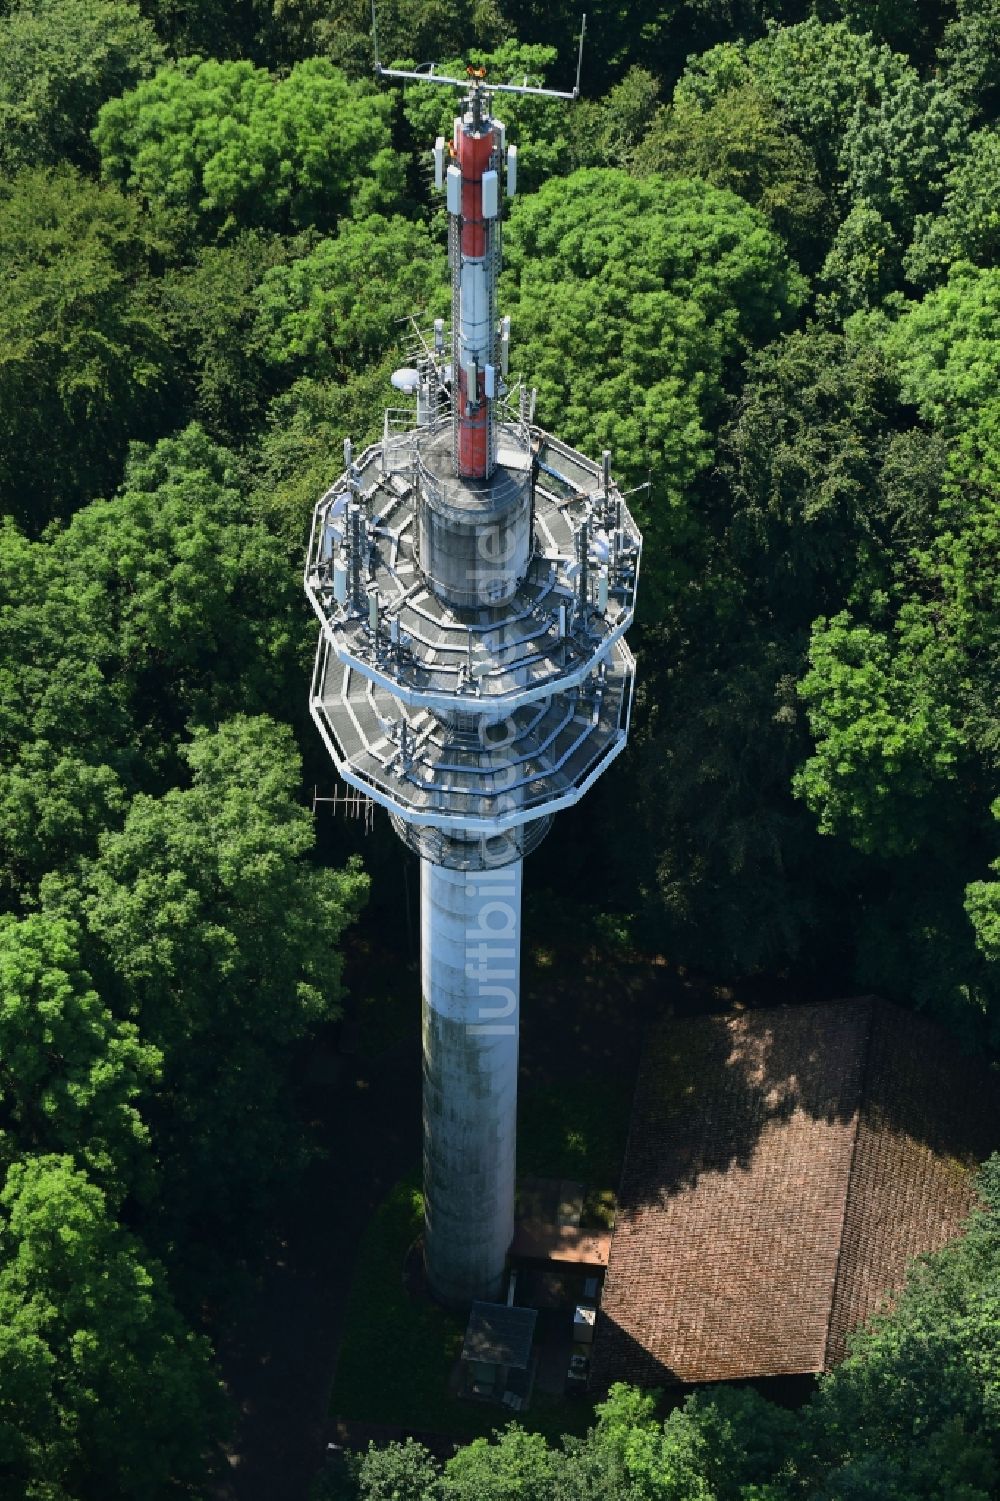 Hofgeismar aus der Vogelperspektive: Funkturm und Sendeanlage als Grundnetzsender Heuberg in Hofgeismar im Bundesland Hessen, Deutschland